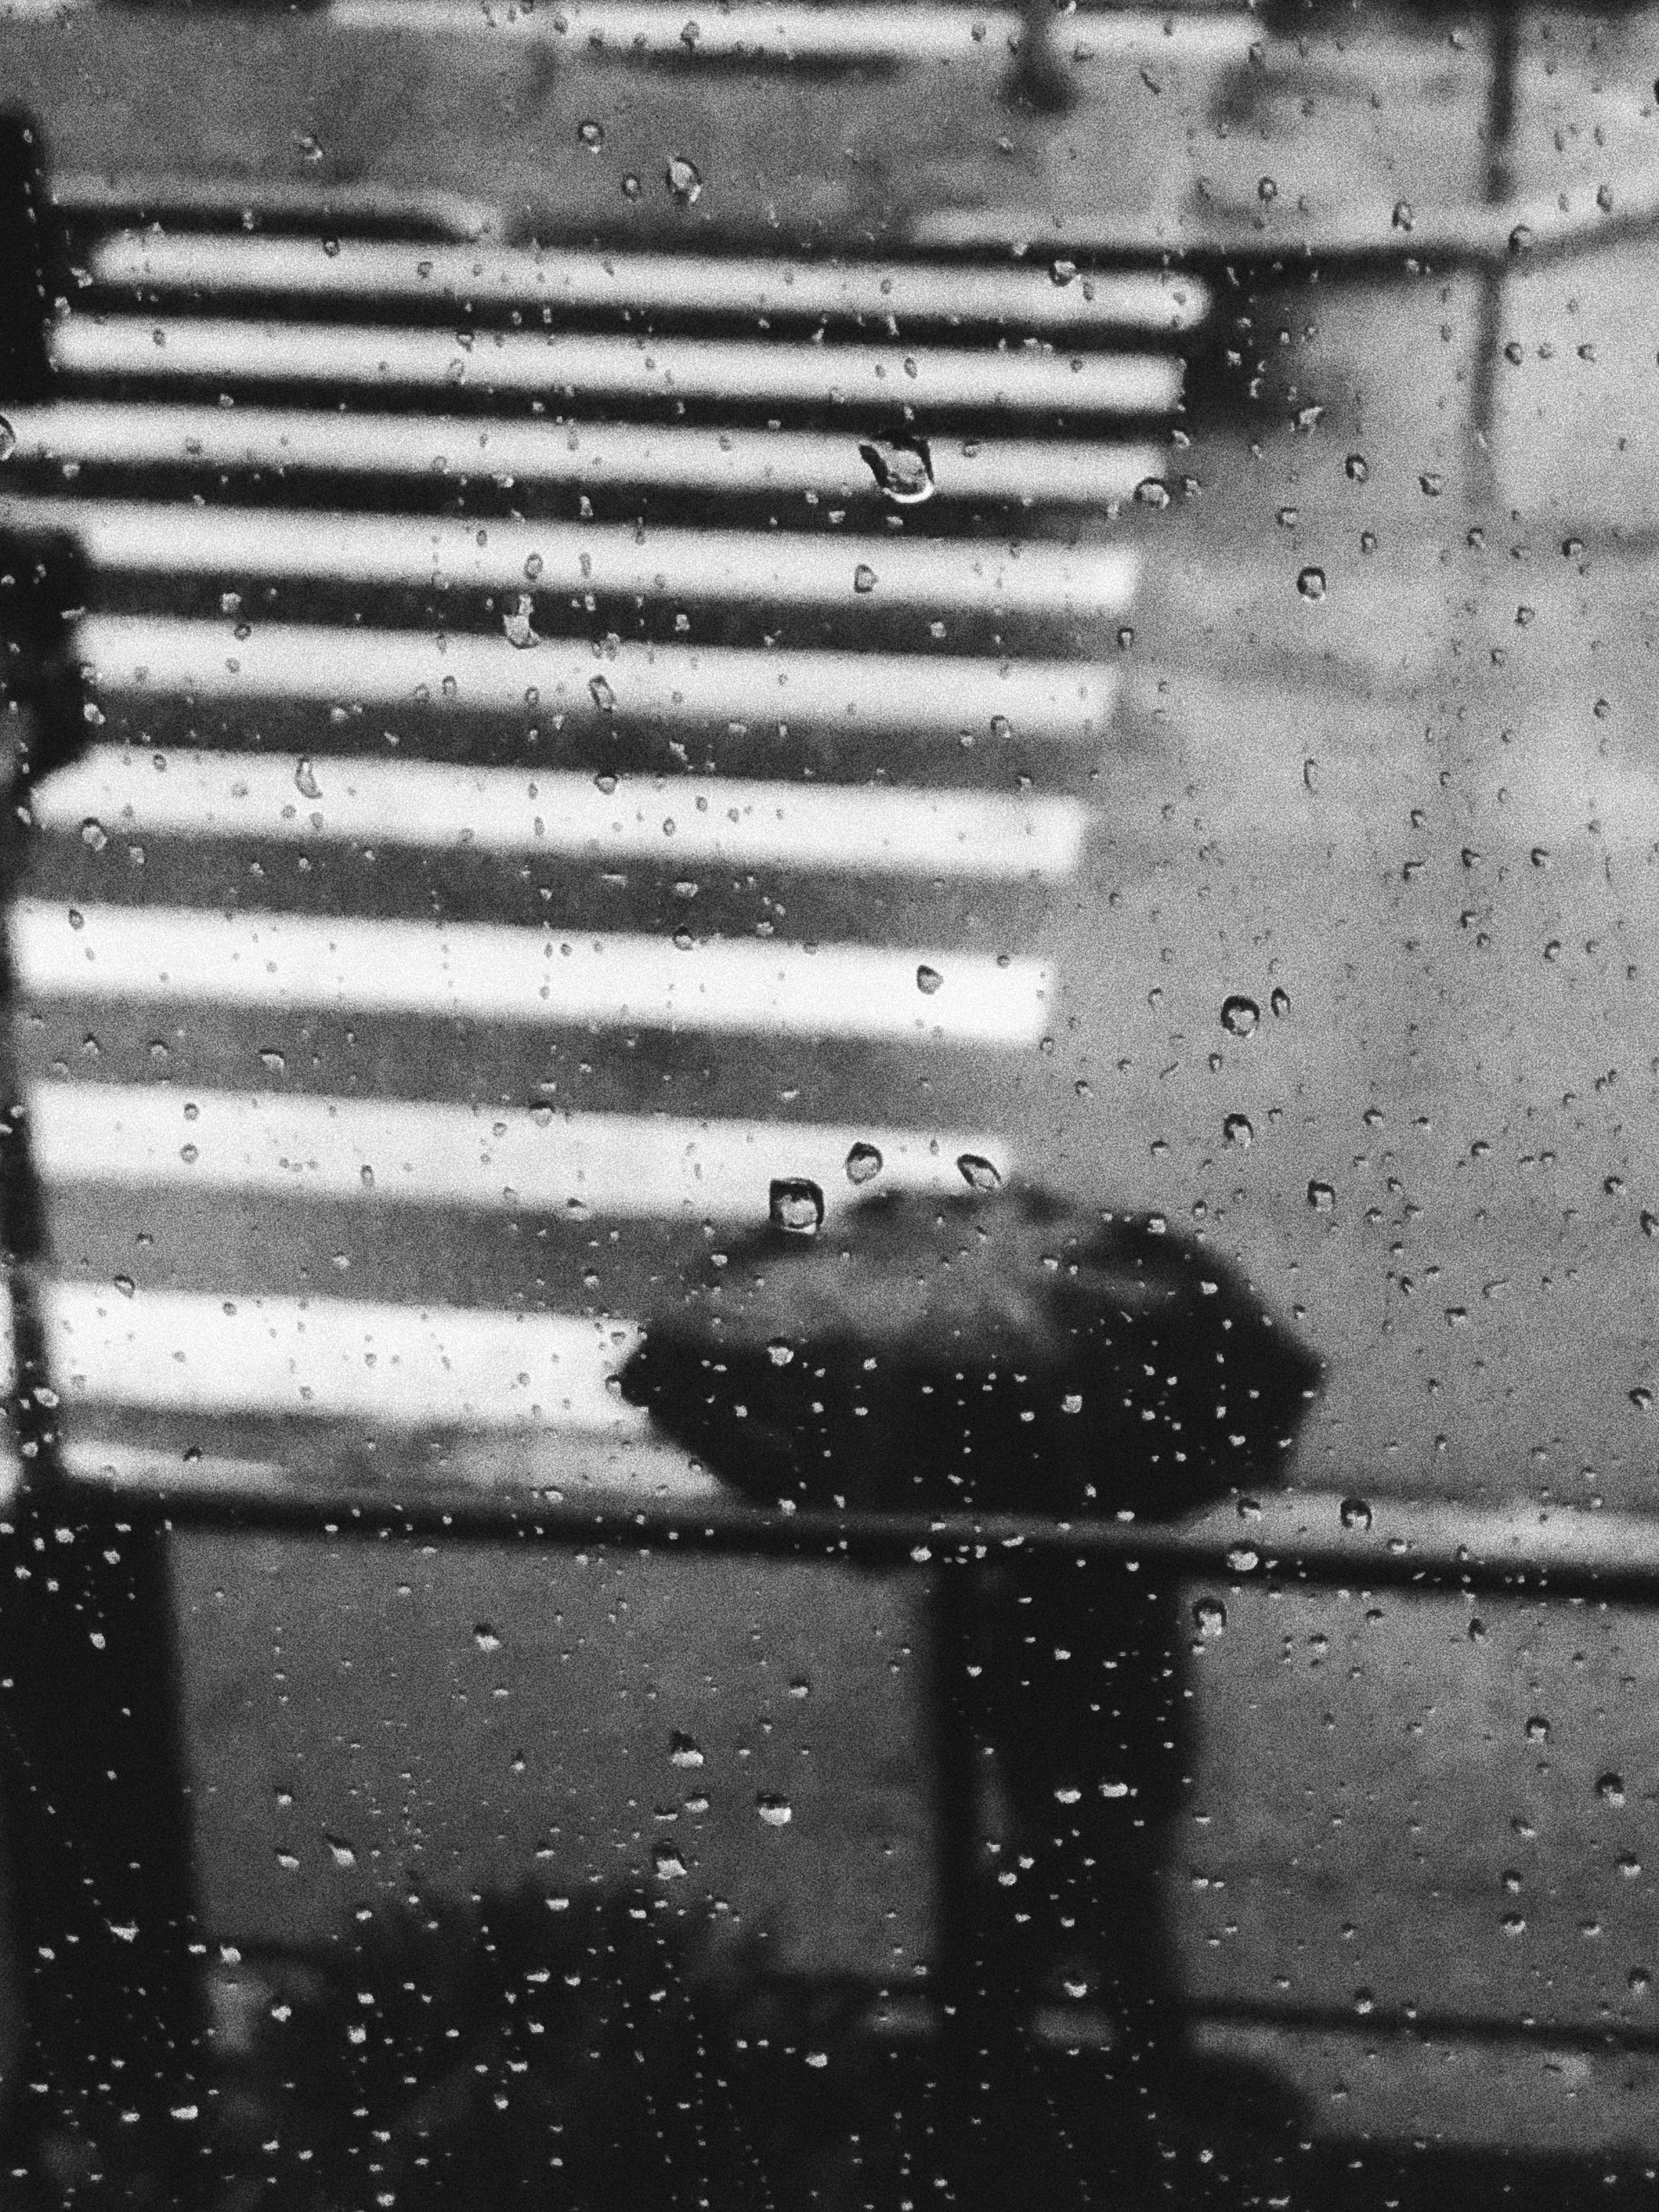 Hình mưa buồn: Những hình ảnh mưa buồn sẽ khiến bạn cảm nhận được những nỗi buồn và lẻ loi giữa những giọt mưa rơi. Tuy nhiên, đôi khi nó cũng mang đến cho chúng ta sự cảm động và sâu lắng. Hãy cùng chiêm ngưỡng những bức hình mưa buồn để thấm thoát và tìm thấy sự yên bình trong lúc buồn thảm.